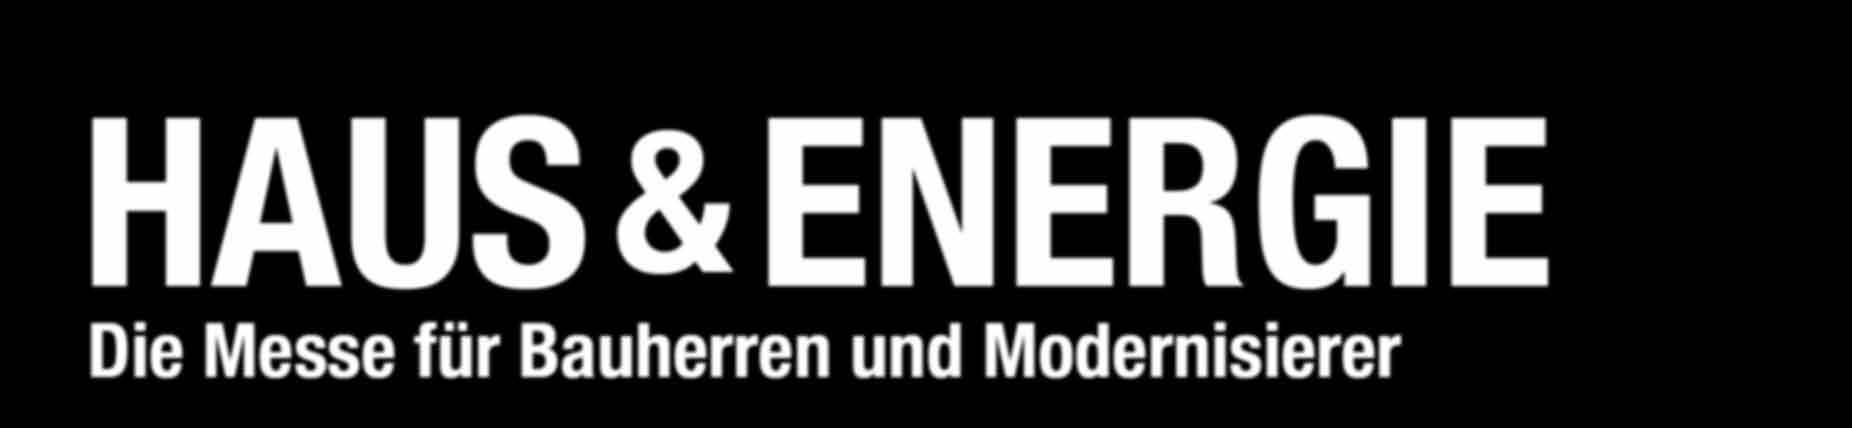 Haus & Energie 2015 Jetzt informieren: www.haus-energie-messe.